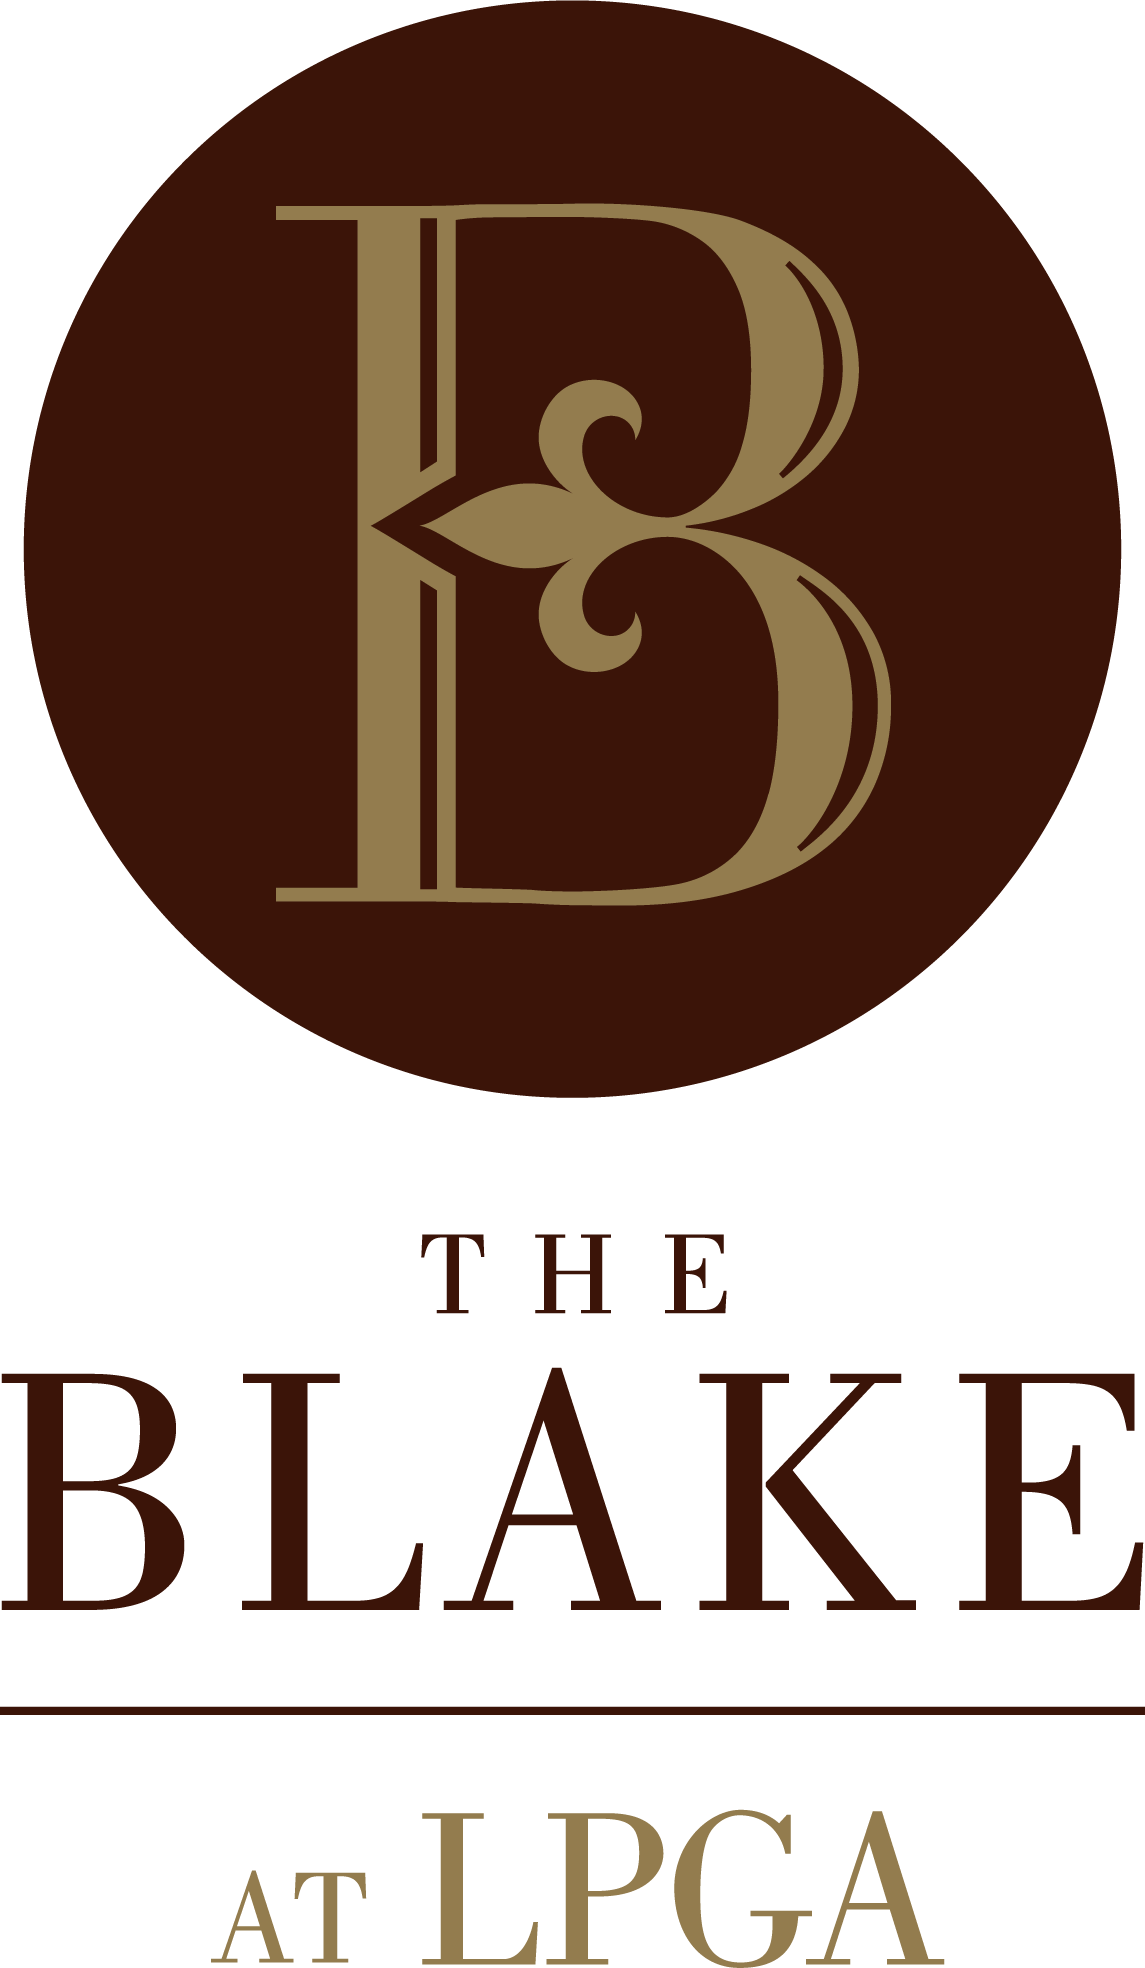 b. The Blake at LPGA (Premier)